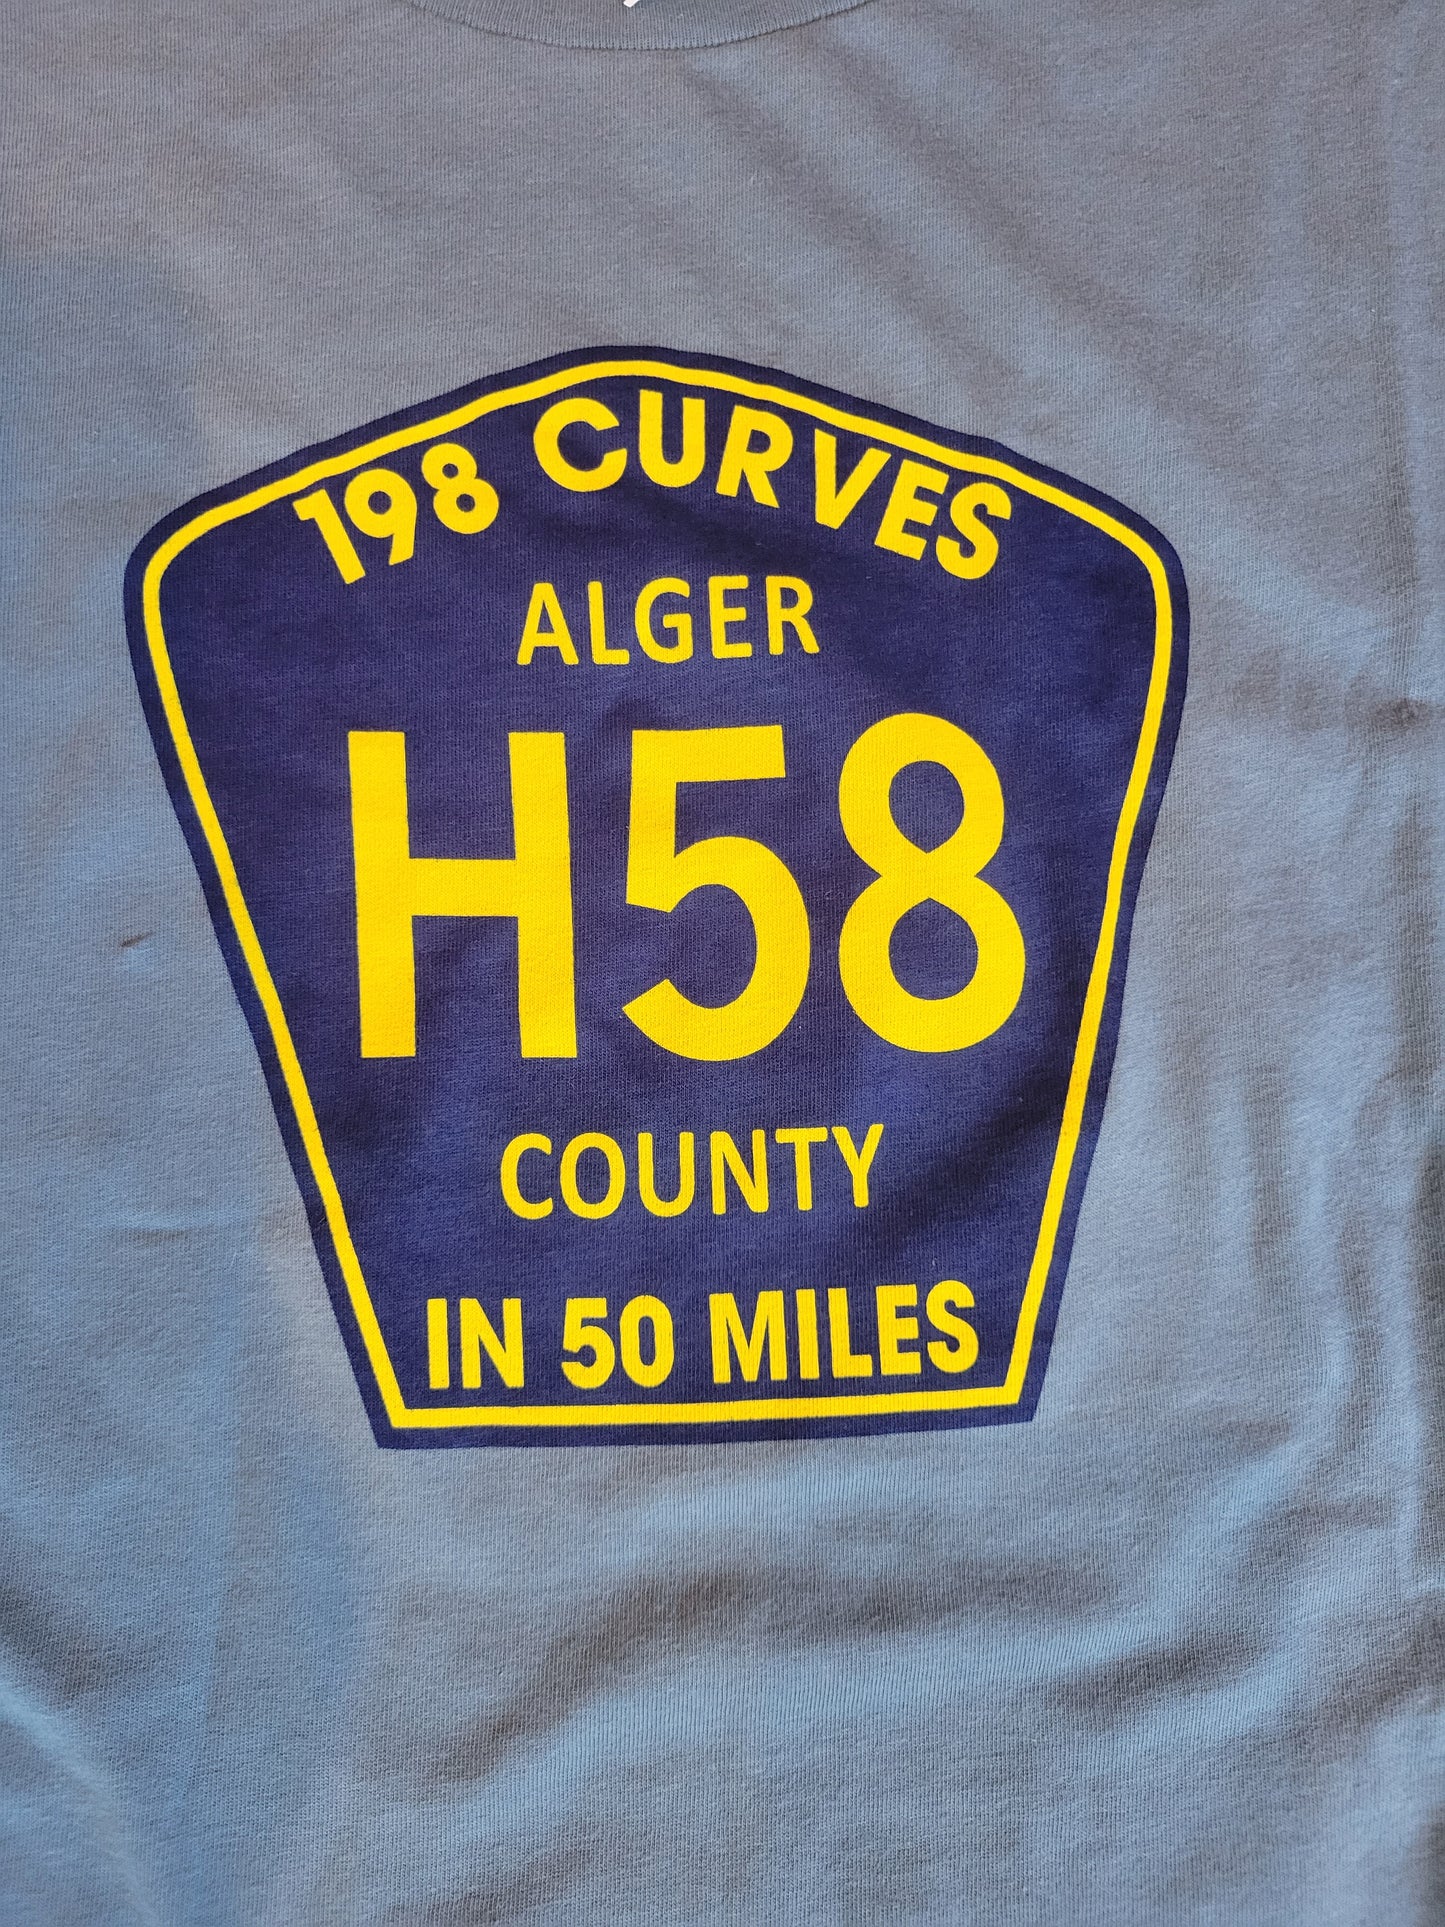 H 58 Curves short sleeve t shirt